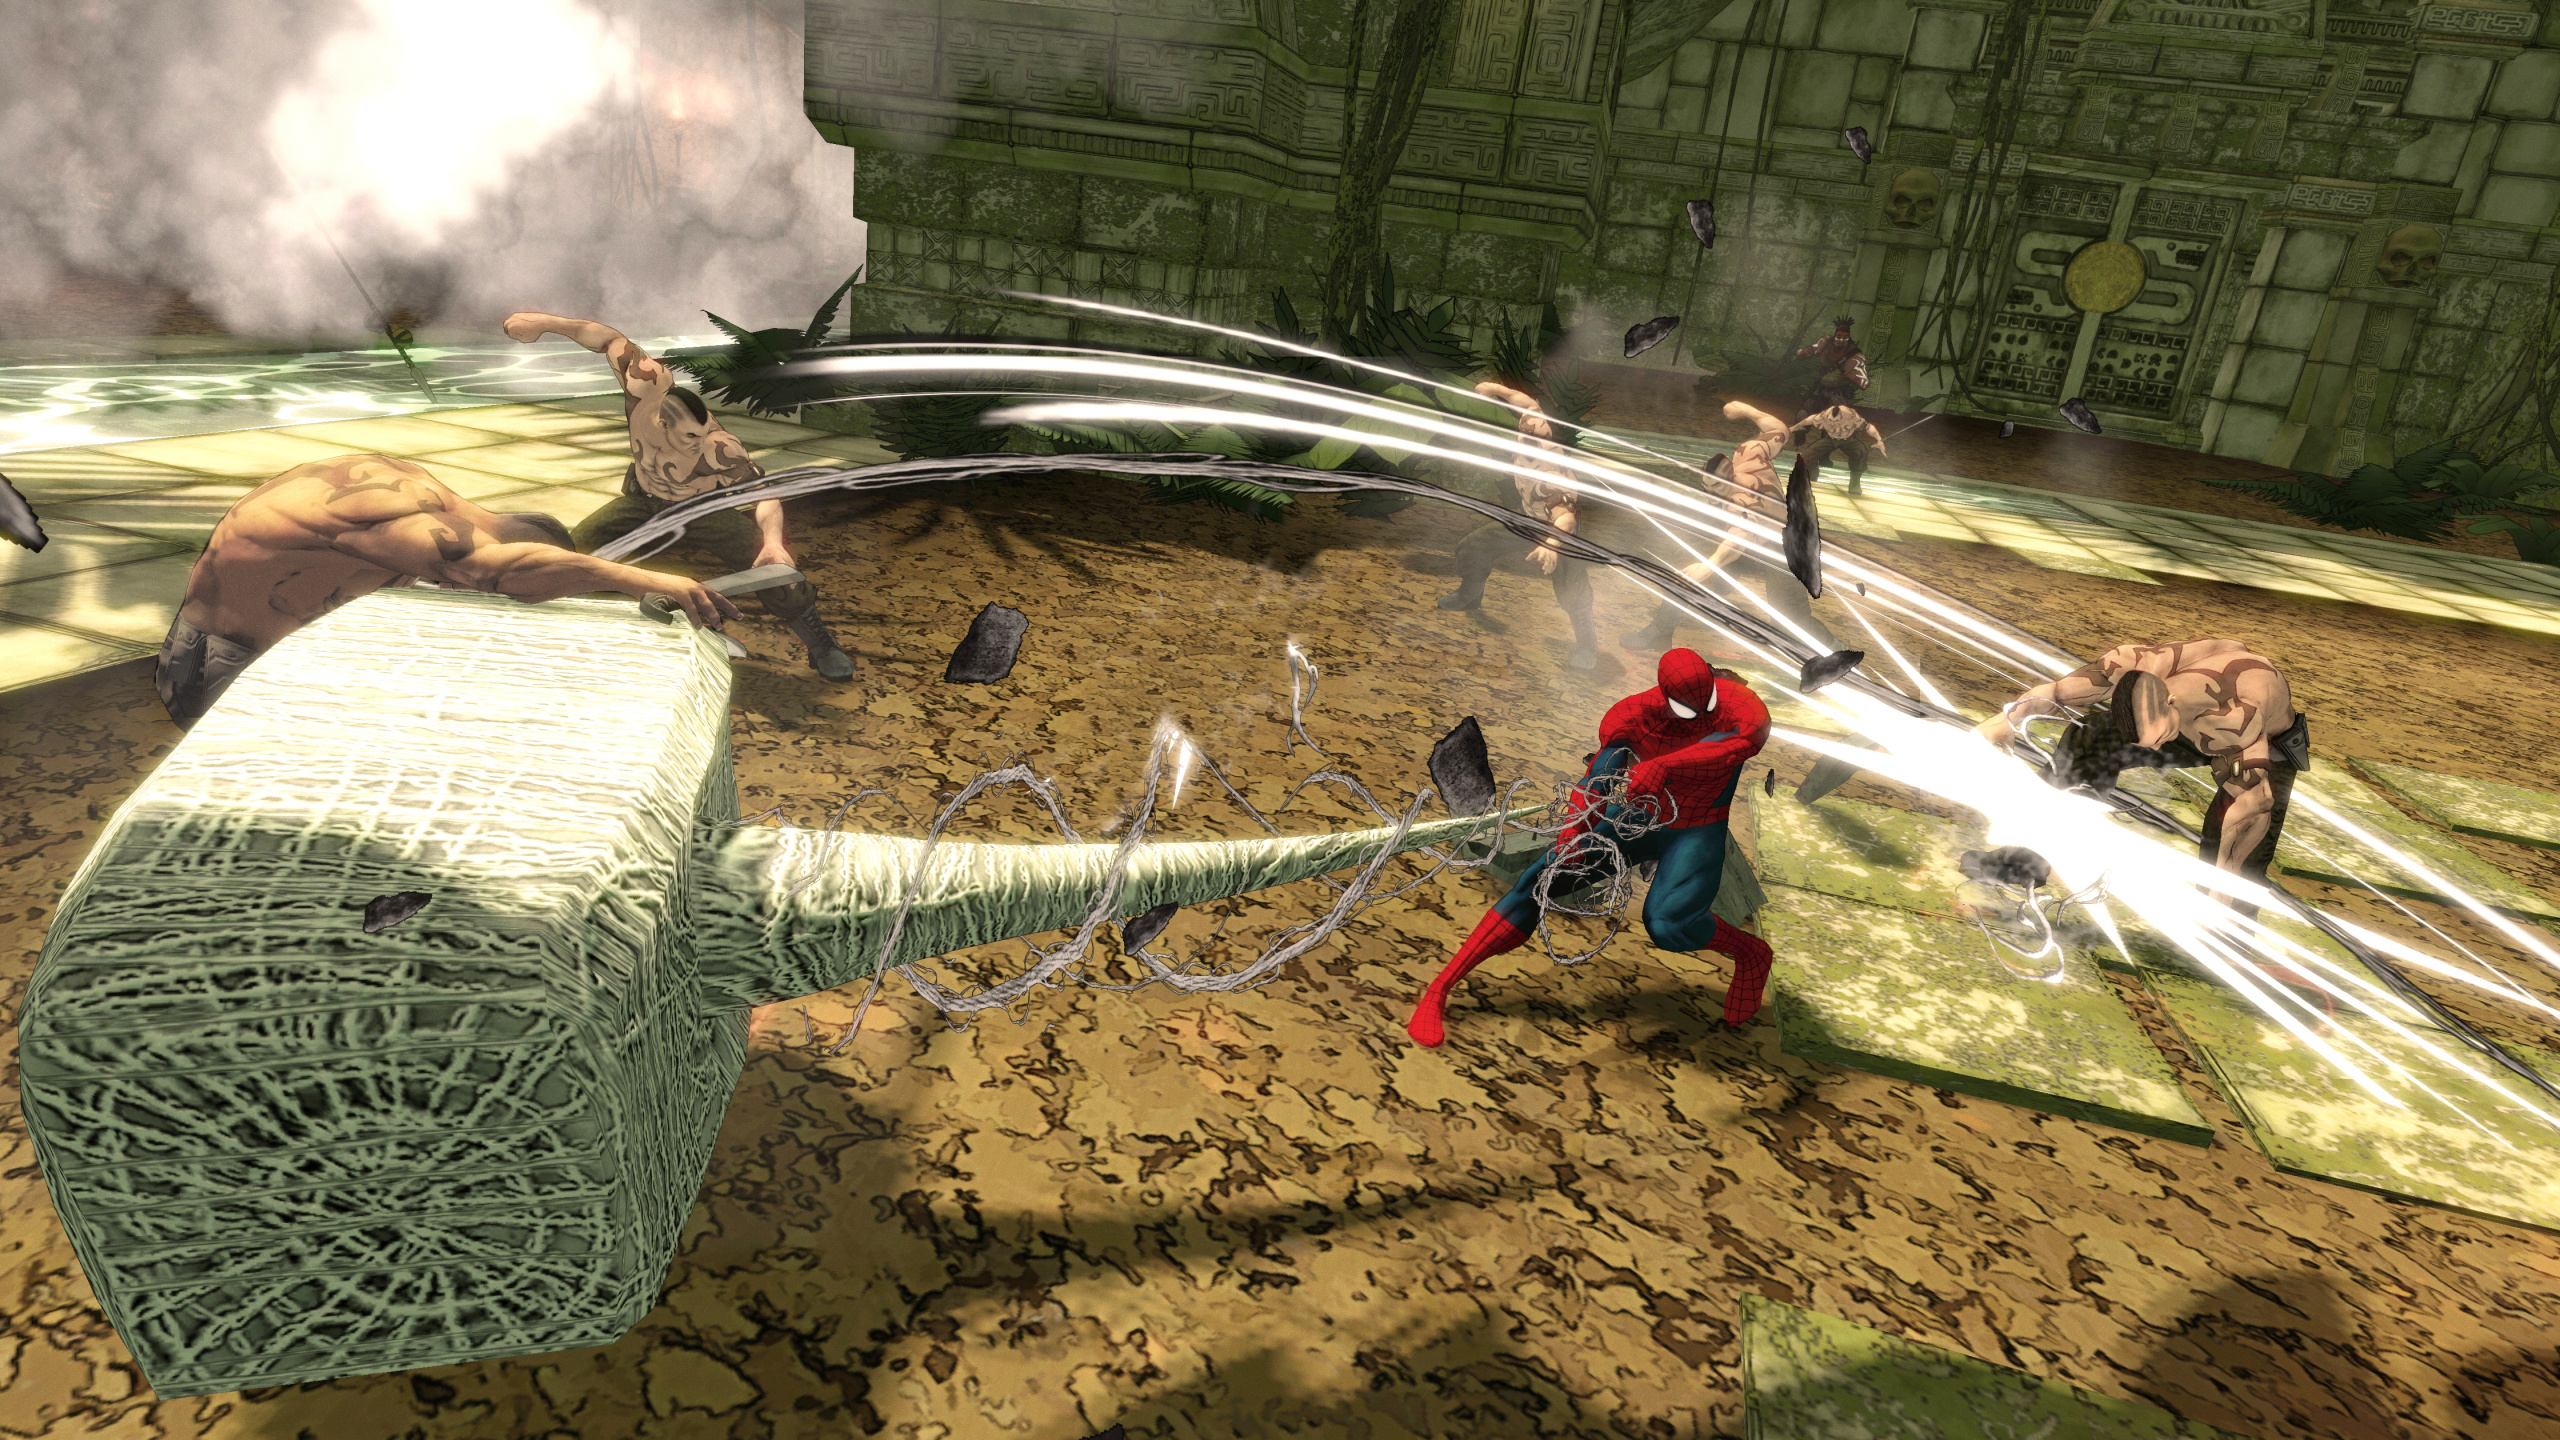 Spider-Man-Shattered Dimensions, Spider-man, Xbox 360, Wii, Pc-Spiel. Wallpaper in 2560x1440 Resolution